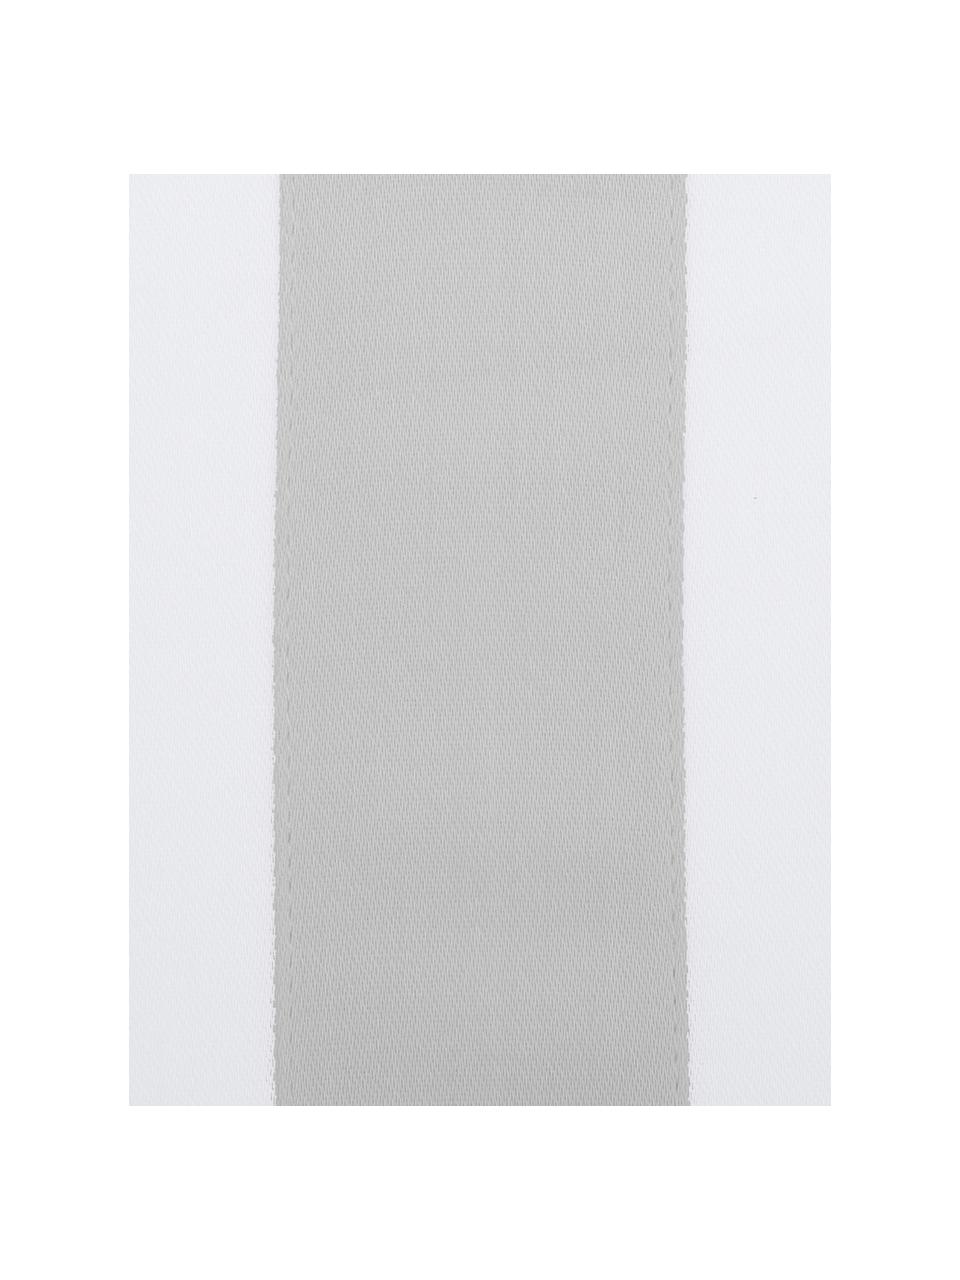 Poszewka na poduszkę z satyny bawełnianej Nora, 2 szt., Biały, jasny szary, S 40 x D 80 cm